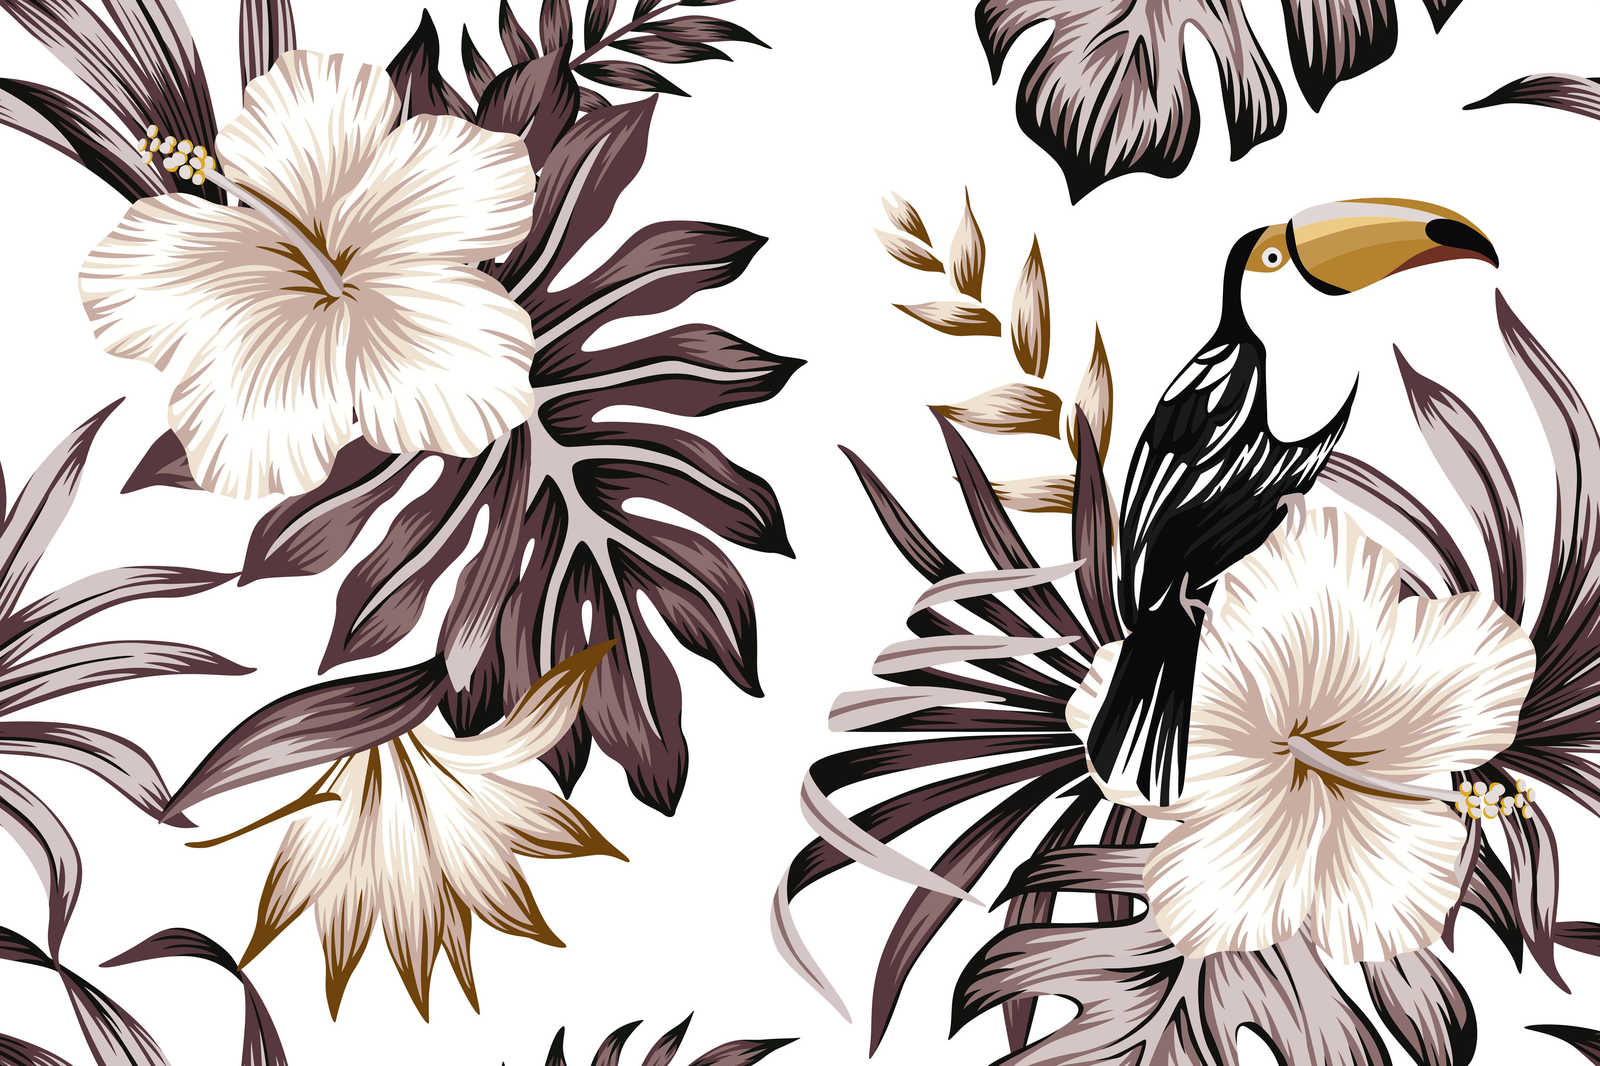             Leinwand mit Dschungelpflanzen und Pelikan | Grau, Weiß, Schwarz – 0,90 m x 0,60 m
        